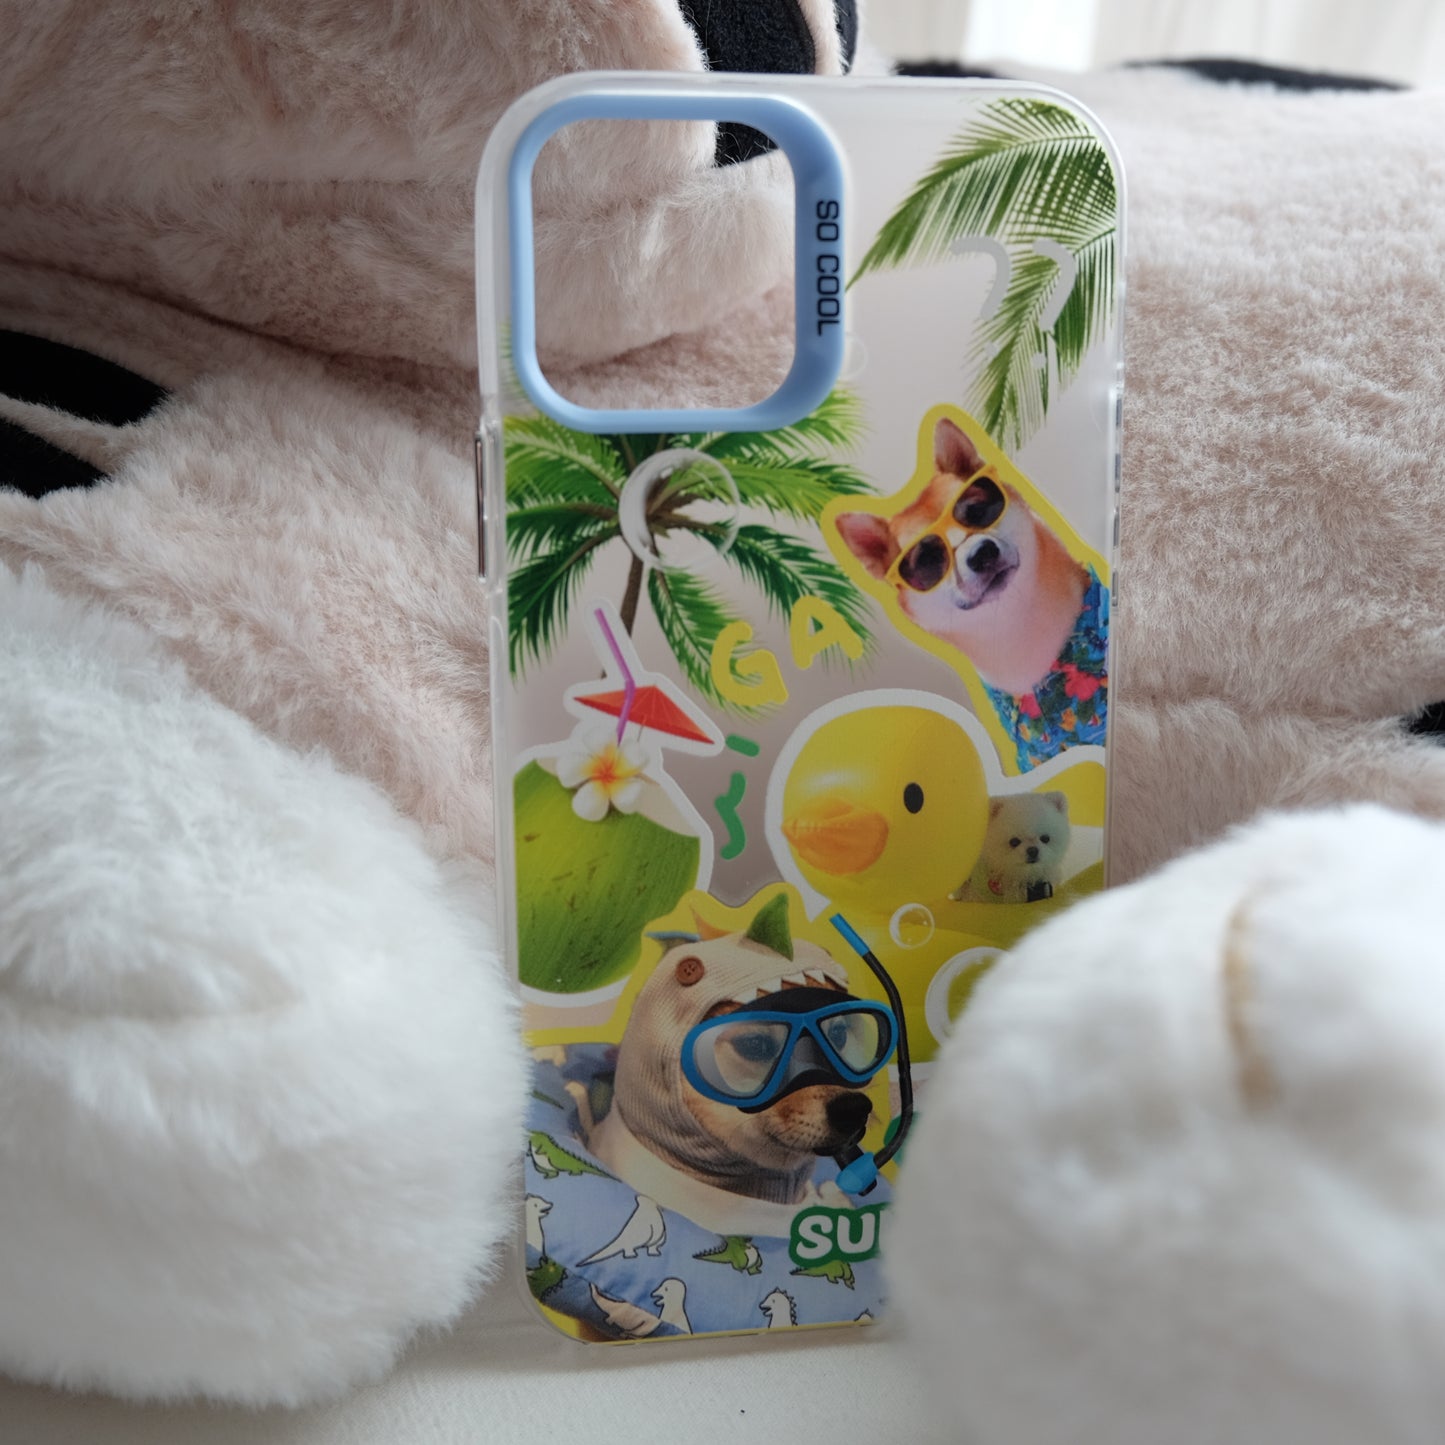 Vacation dog phone case